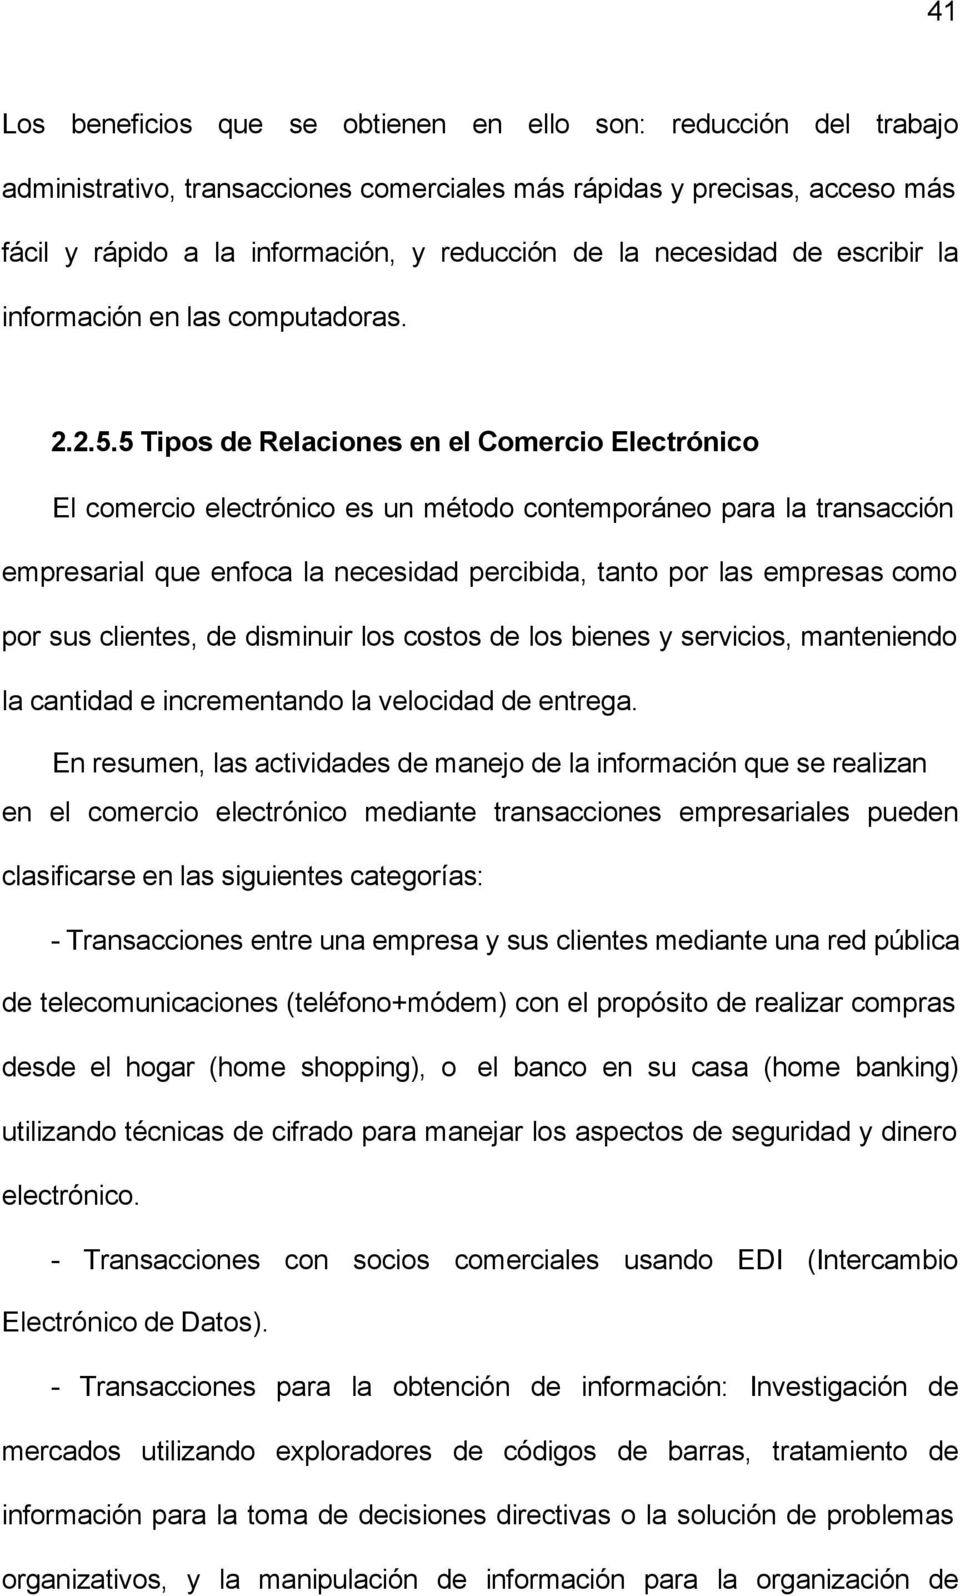 5 Tipos de Relaciones en el Comercio Electrónico El comercio electrónico es un método contemporáneo para la transacción empresarial que enfoca la necesidad percibida, tanto por las empresas como por